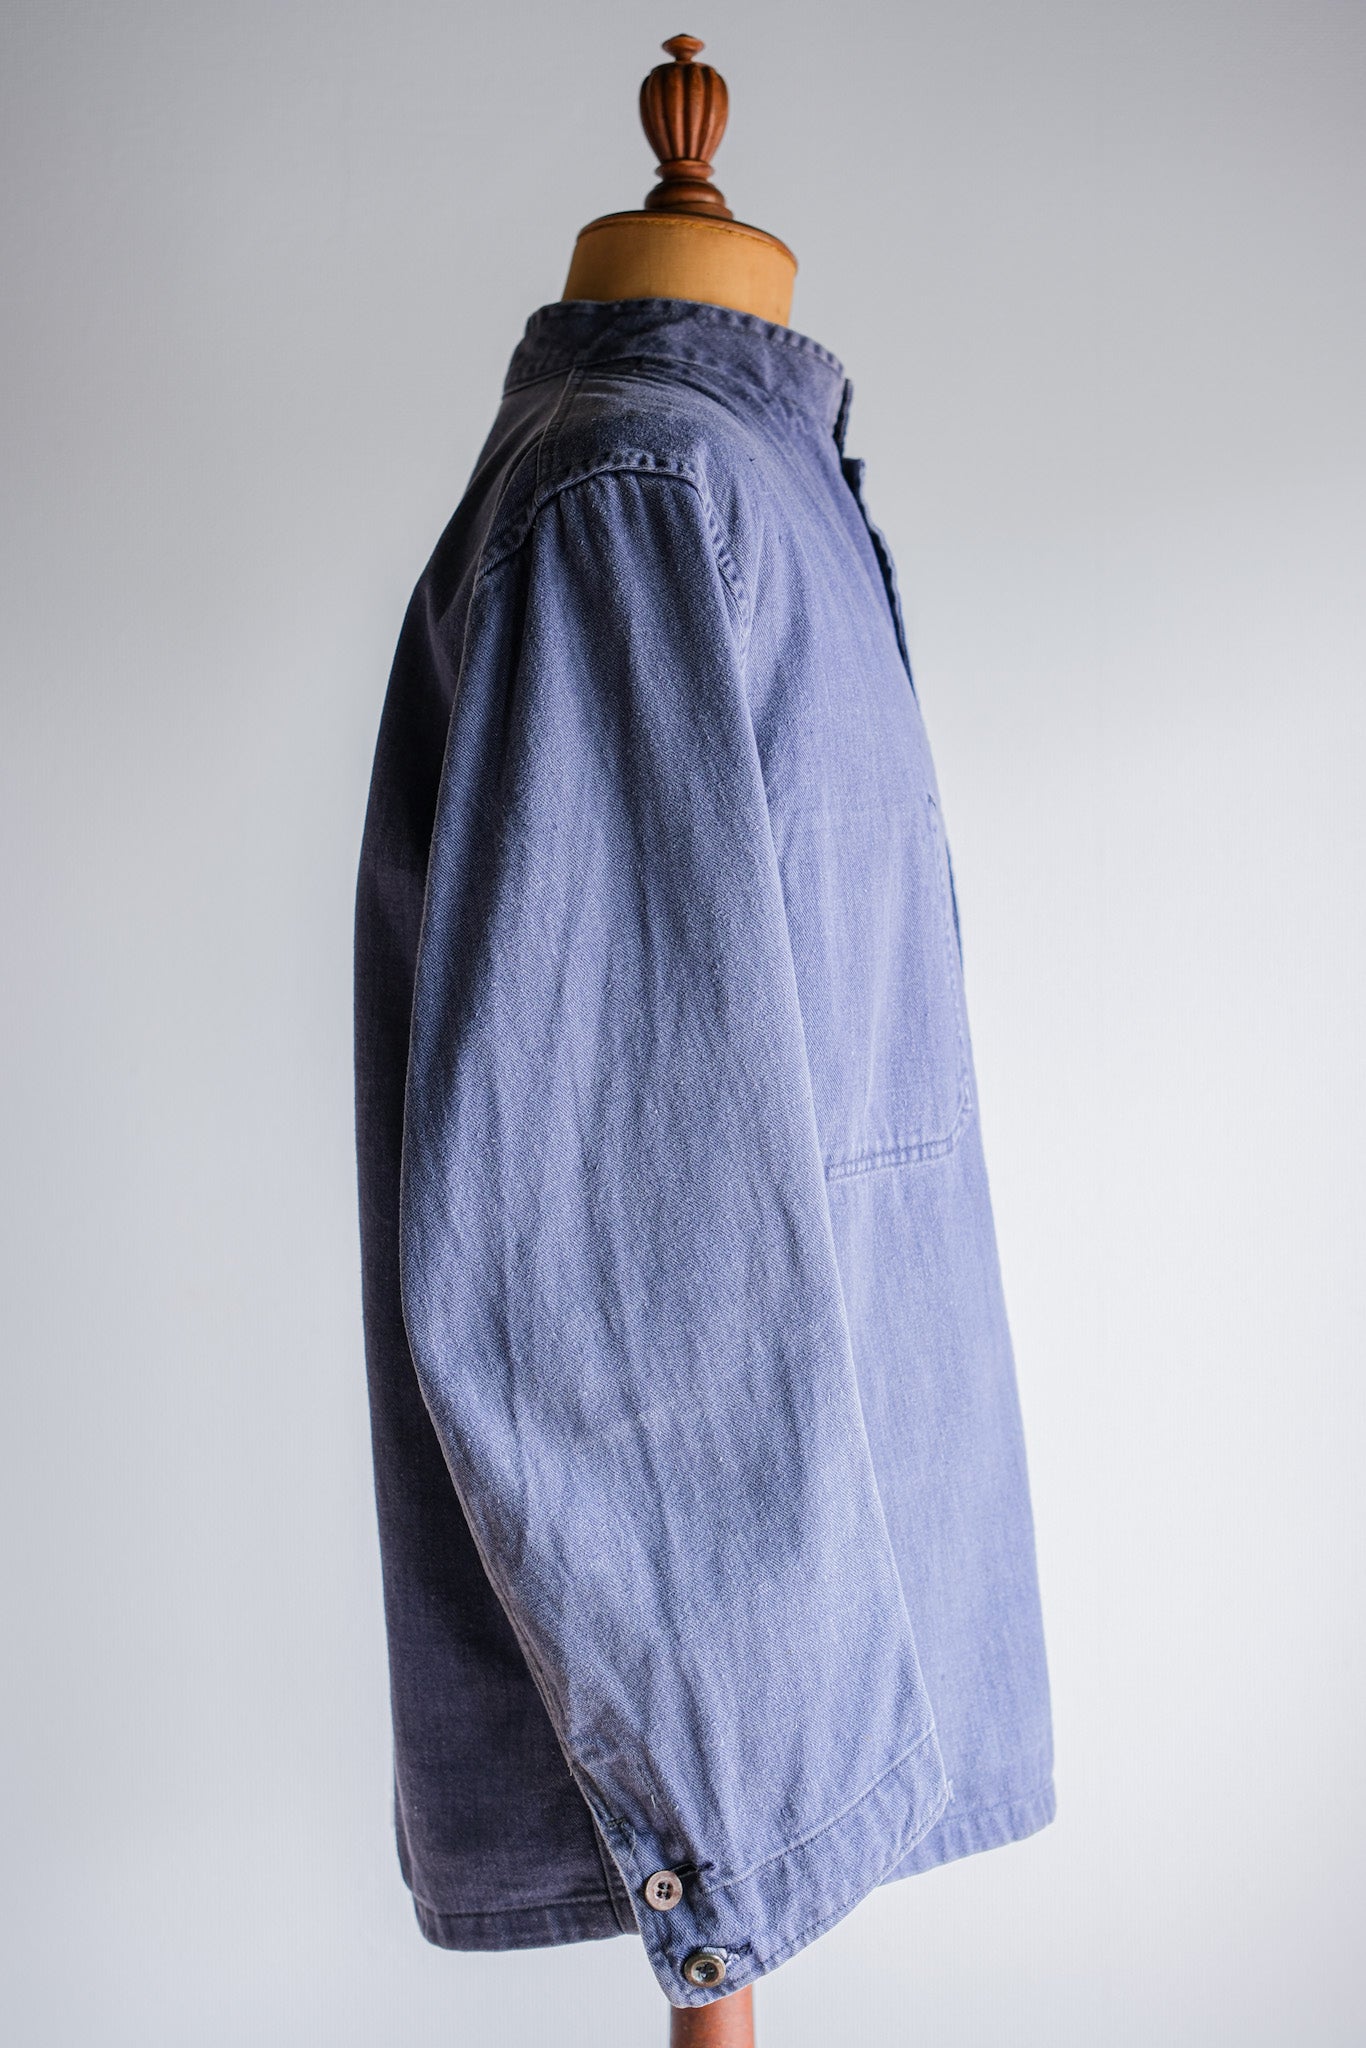 【~50's】British Vintage Blue Drill Stand Collar Work Jacket Size.42